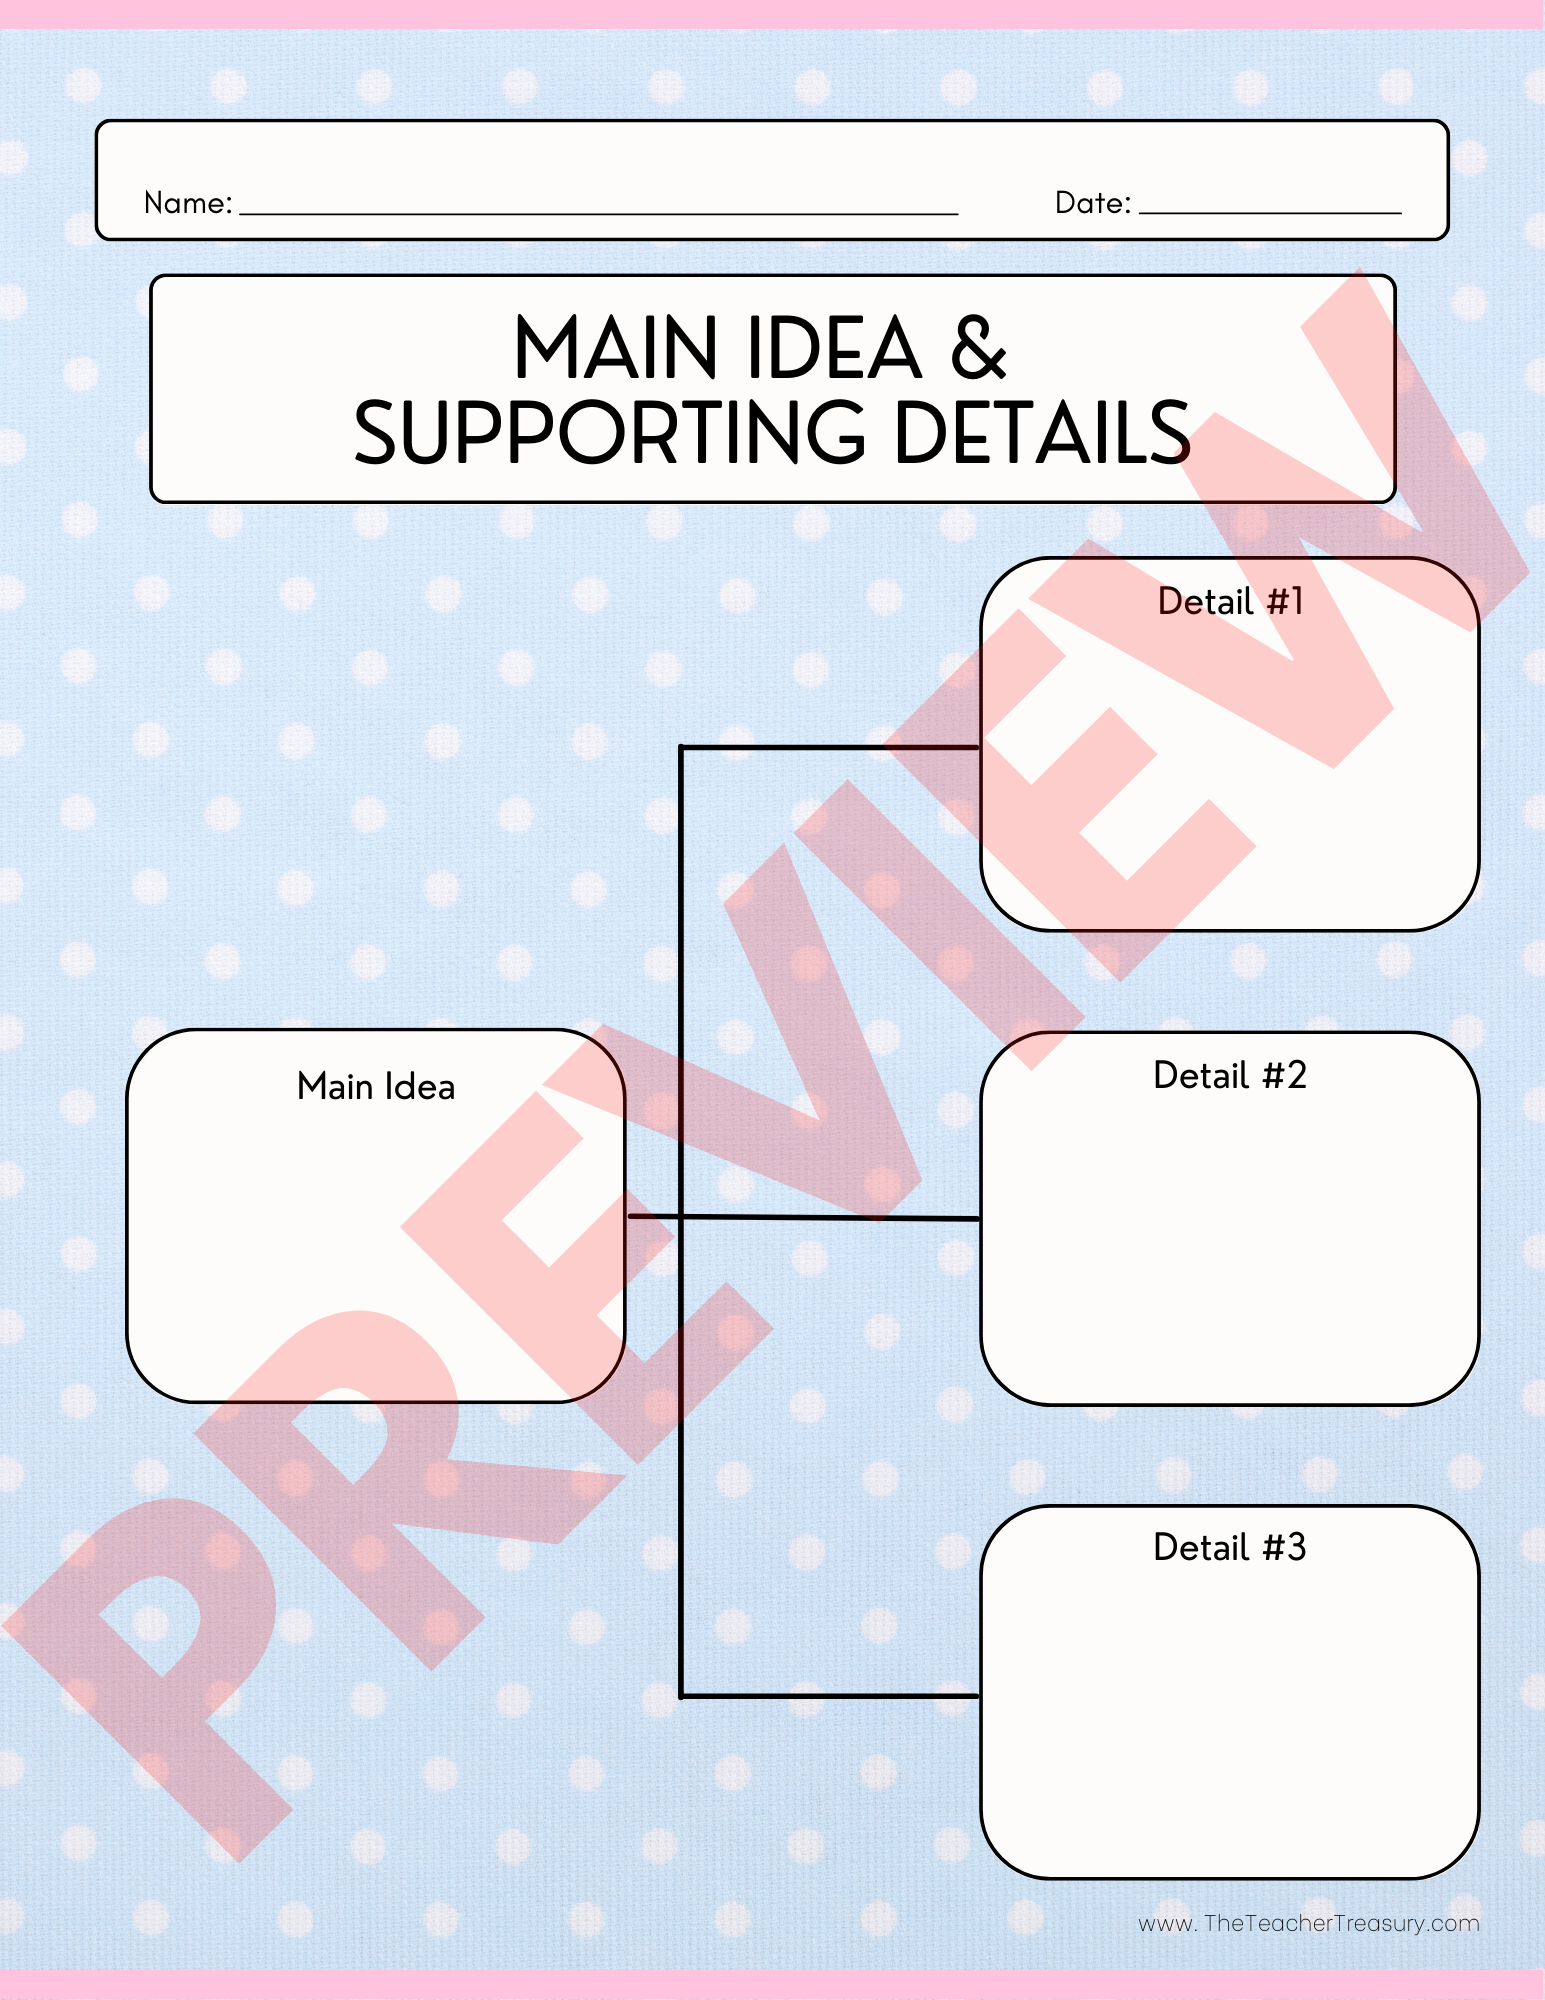 Main Idea Graphic Organizer